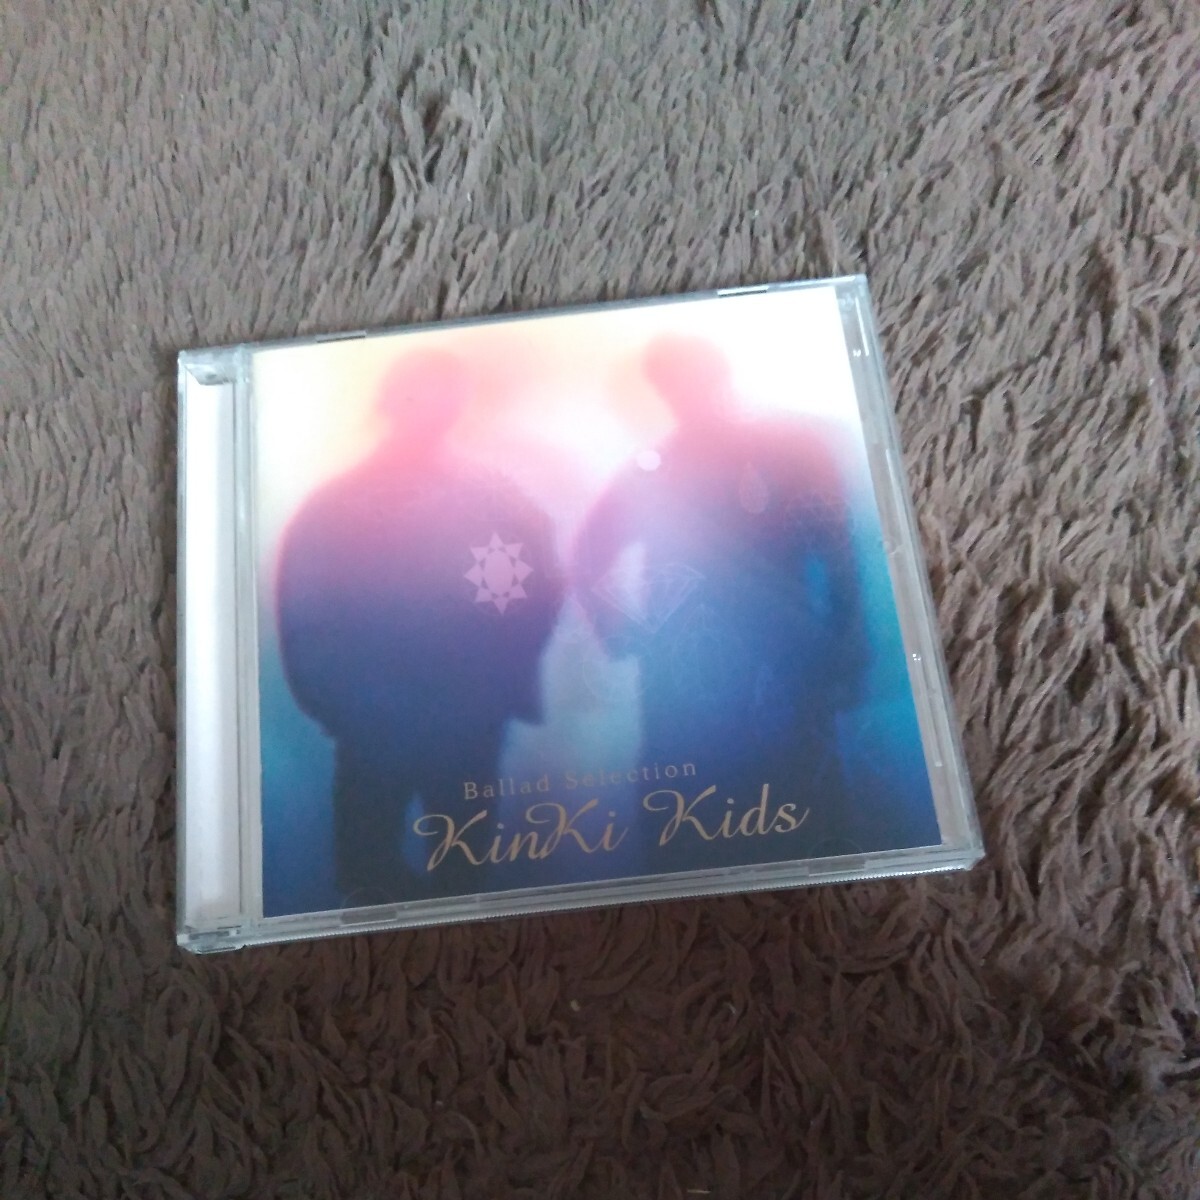 KinKi Kids Ballad Selection バラードセレクション ベスト CD アルバム 愛のかたまり 青の時代 Anniversary 堂本剛 堂本光一 best_画像1